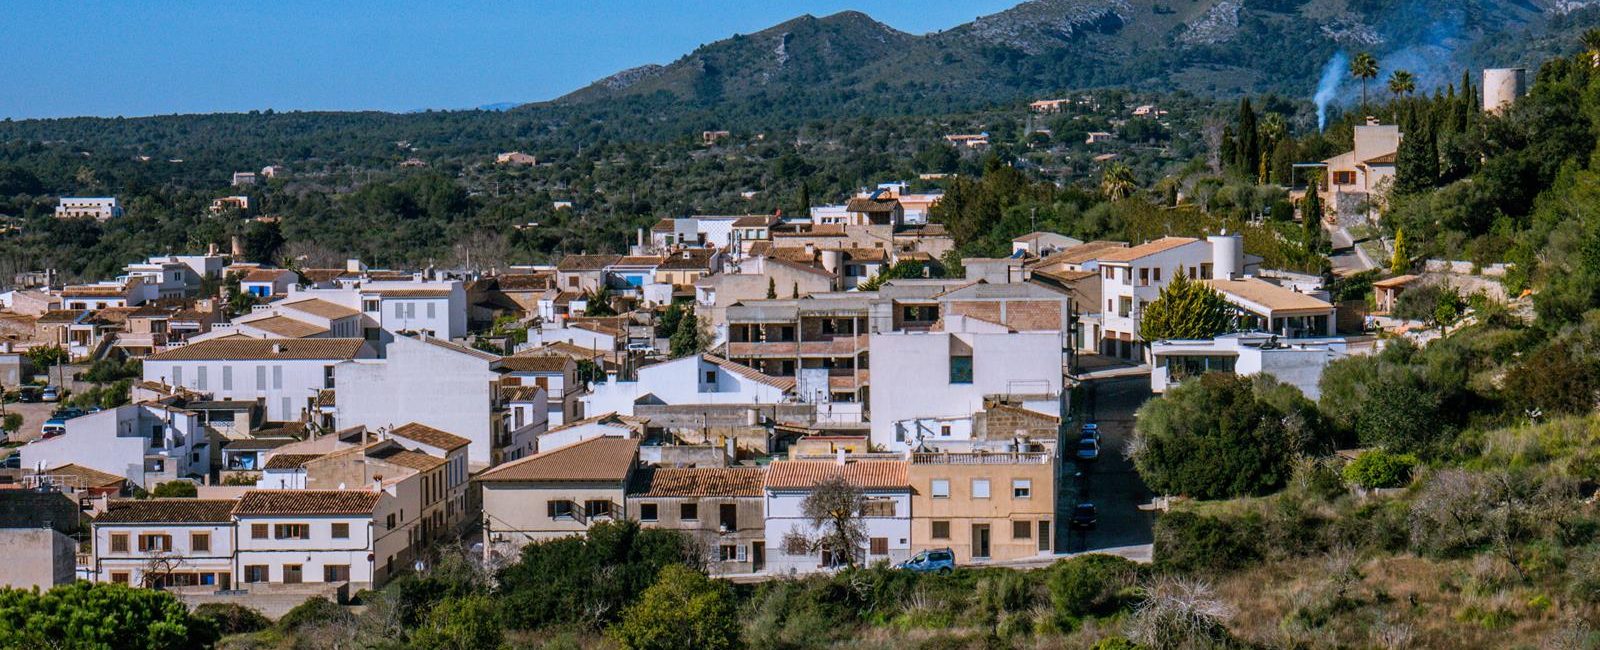 Arta na Majorce – co zwiedzić na wschodzie Majorki?